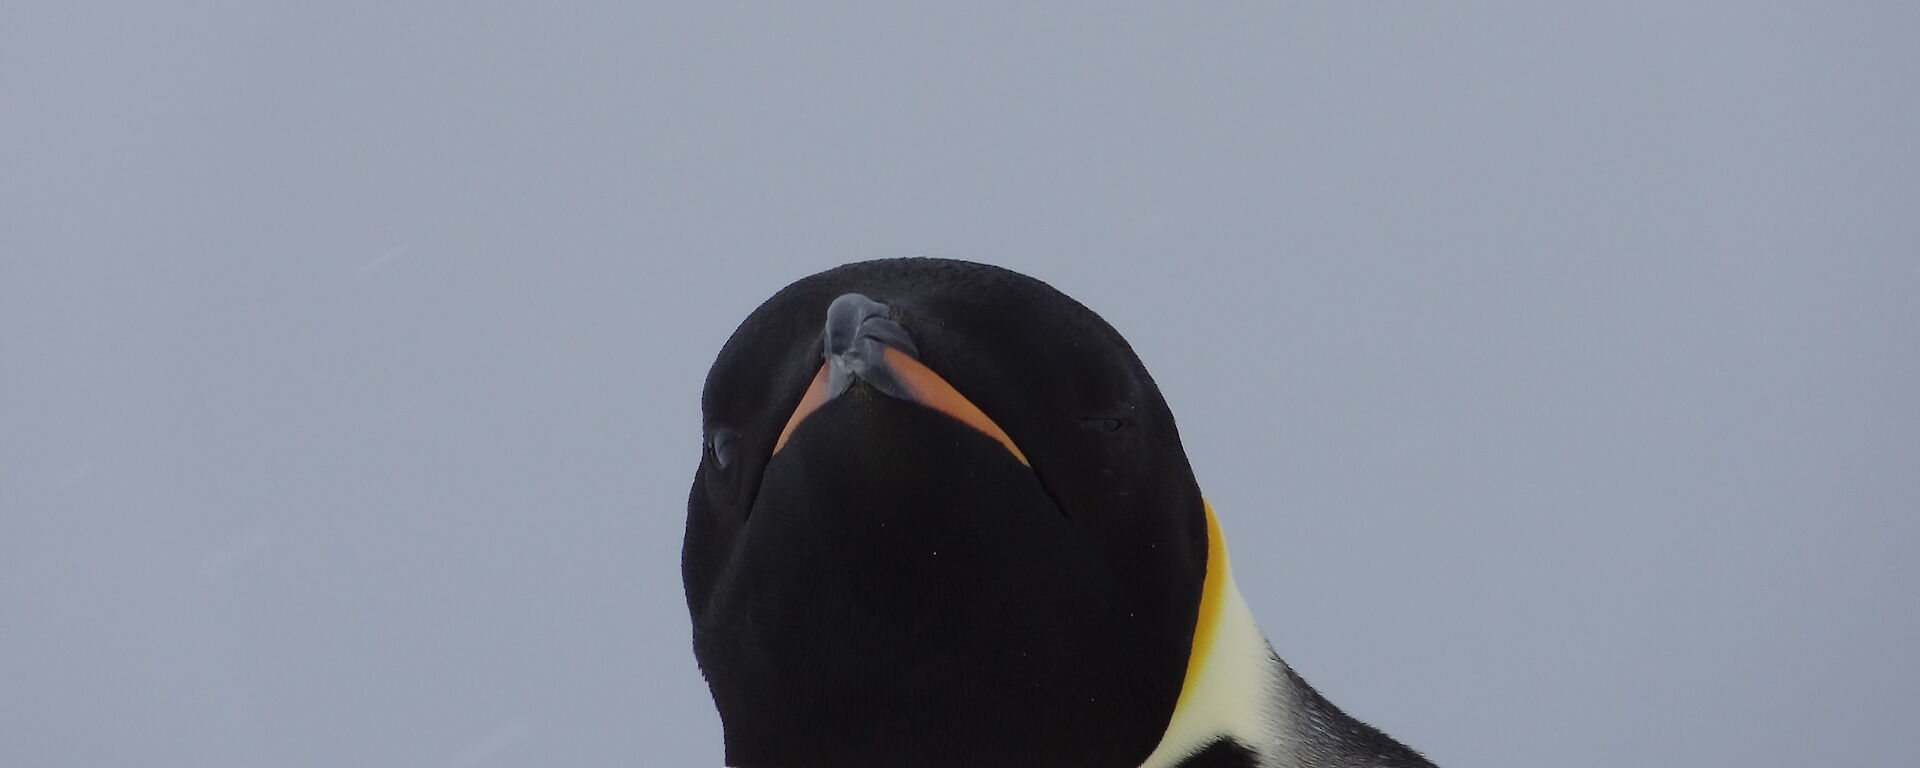 A close head shot of a Emperor penguin